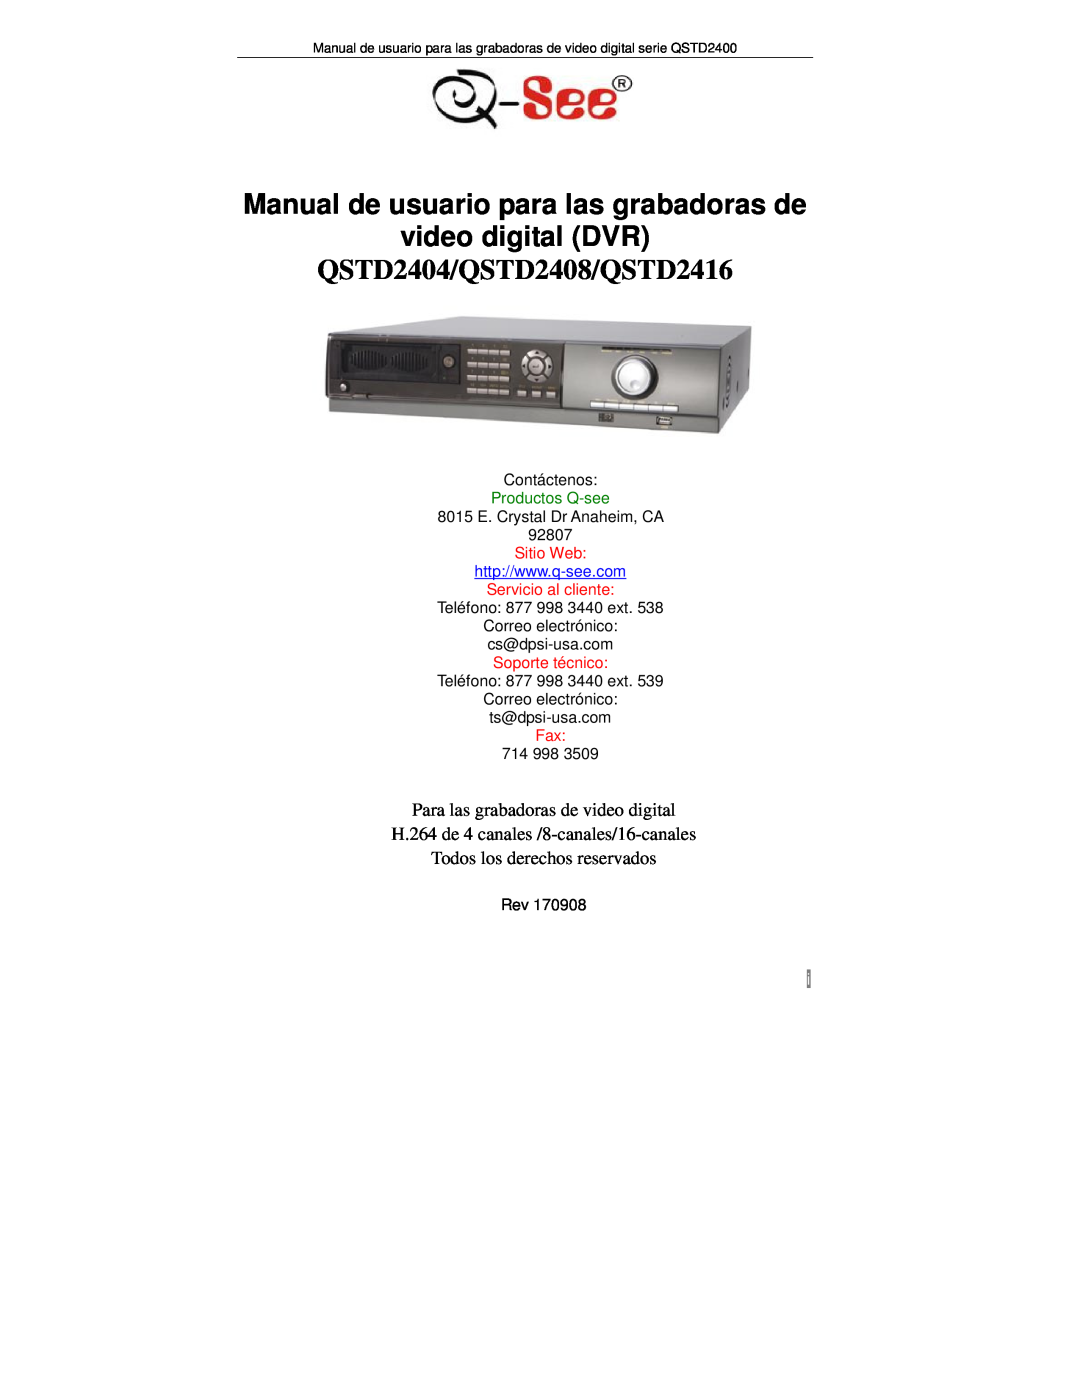 Q-See QTSD2408 manual Manual de usuario para las grabadoras de video digital DVR, QSTD2404/QSTD2408/QSTD2416, Sitio Web 